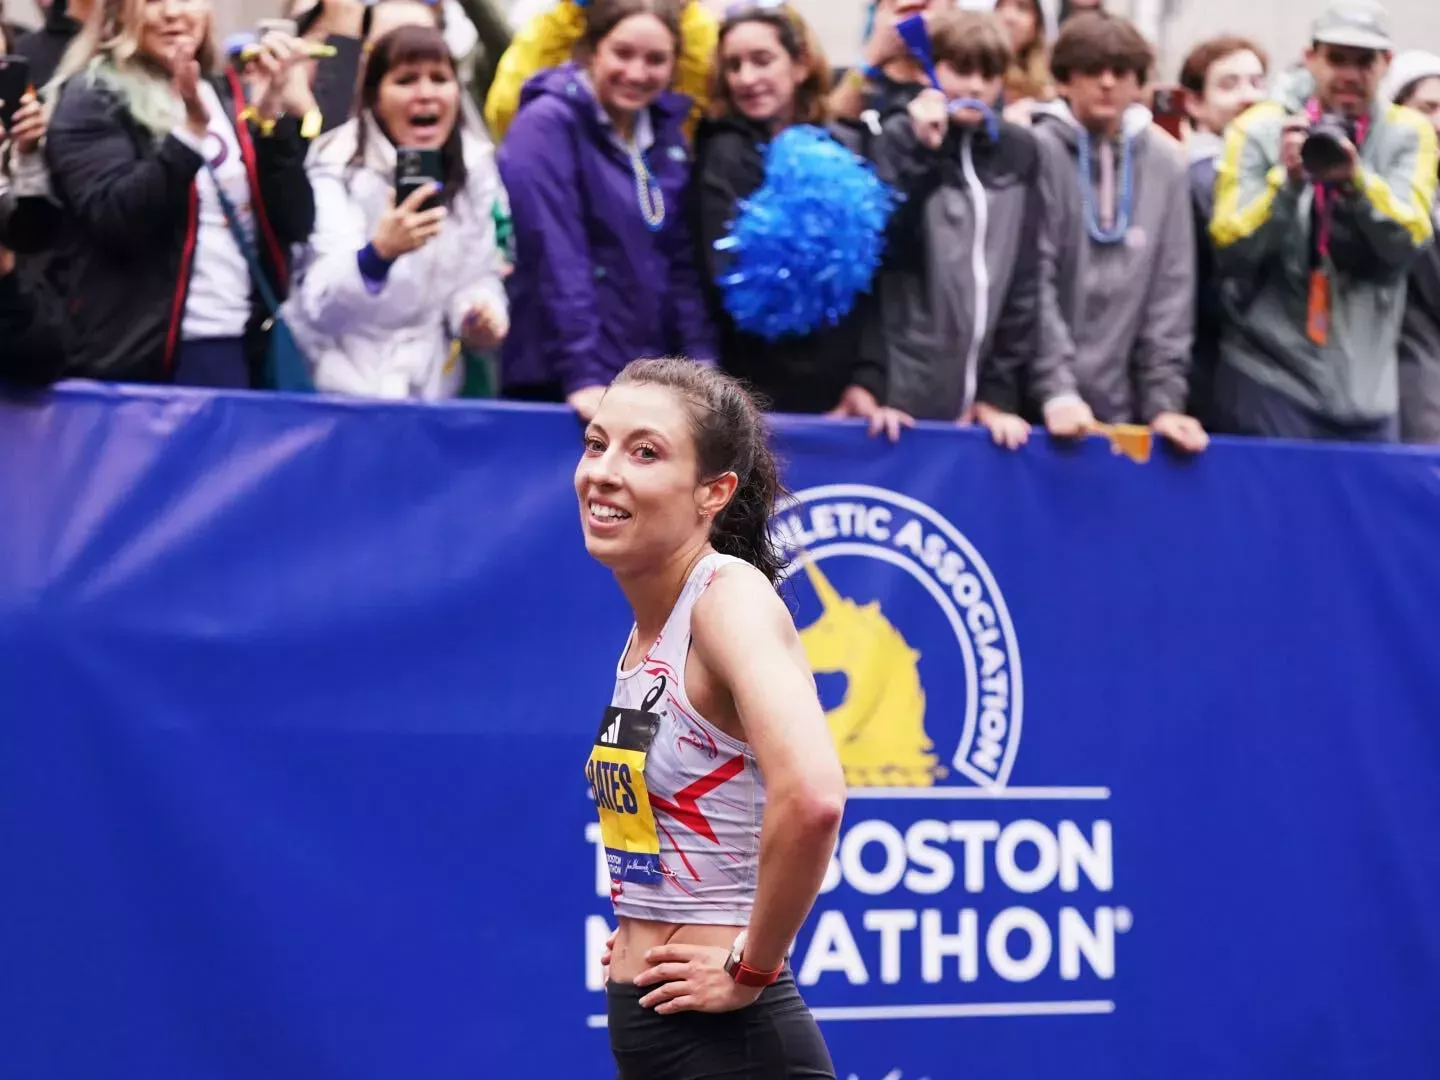 Emma Bates comparte los 10 consejos de entrenamiento y recuperación que le ayudaron a conseguir su mejor marca en Boston